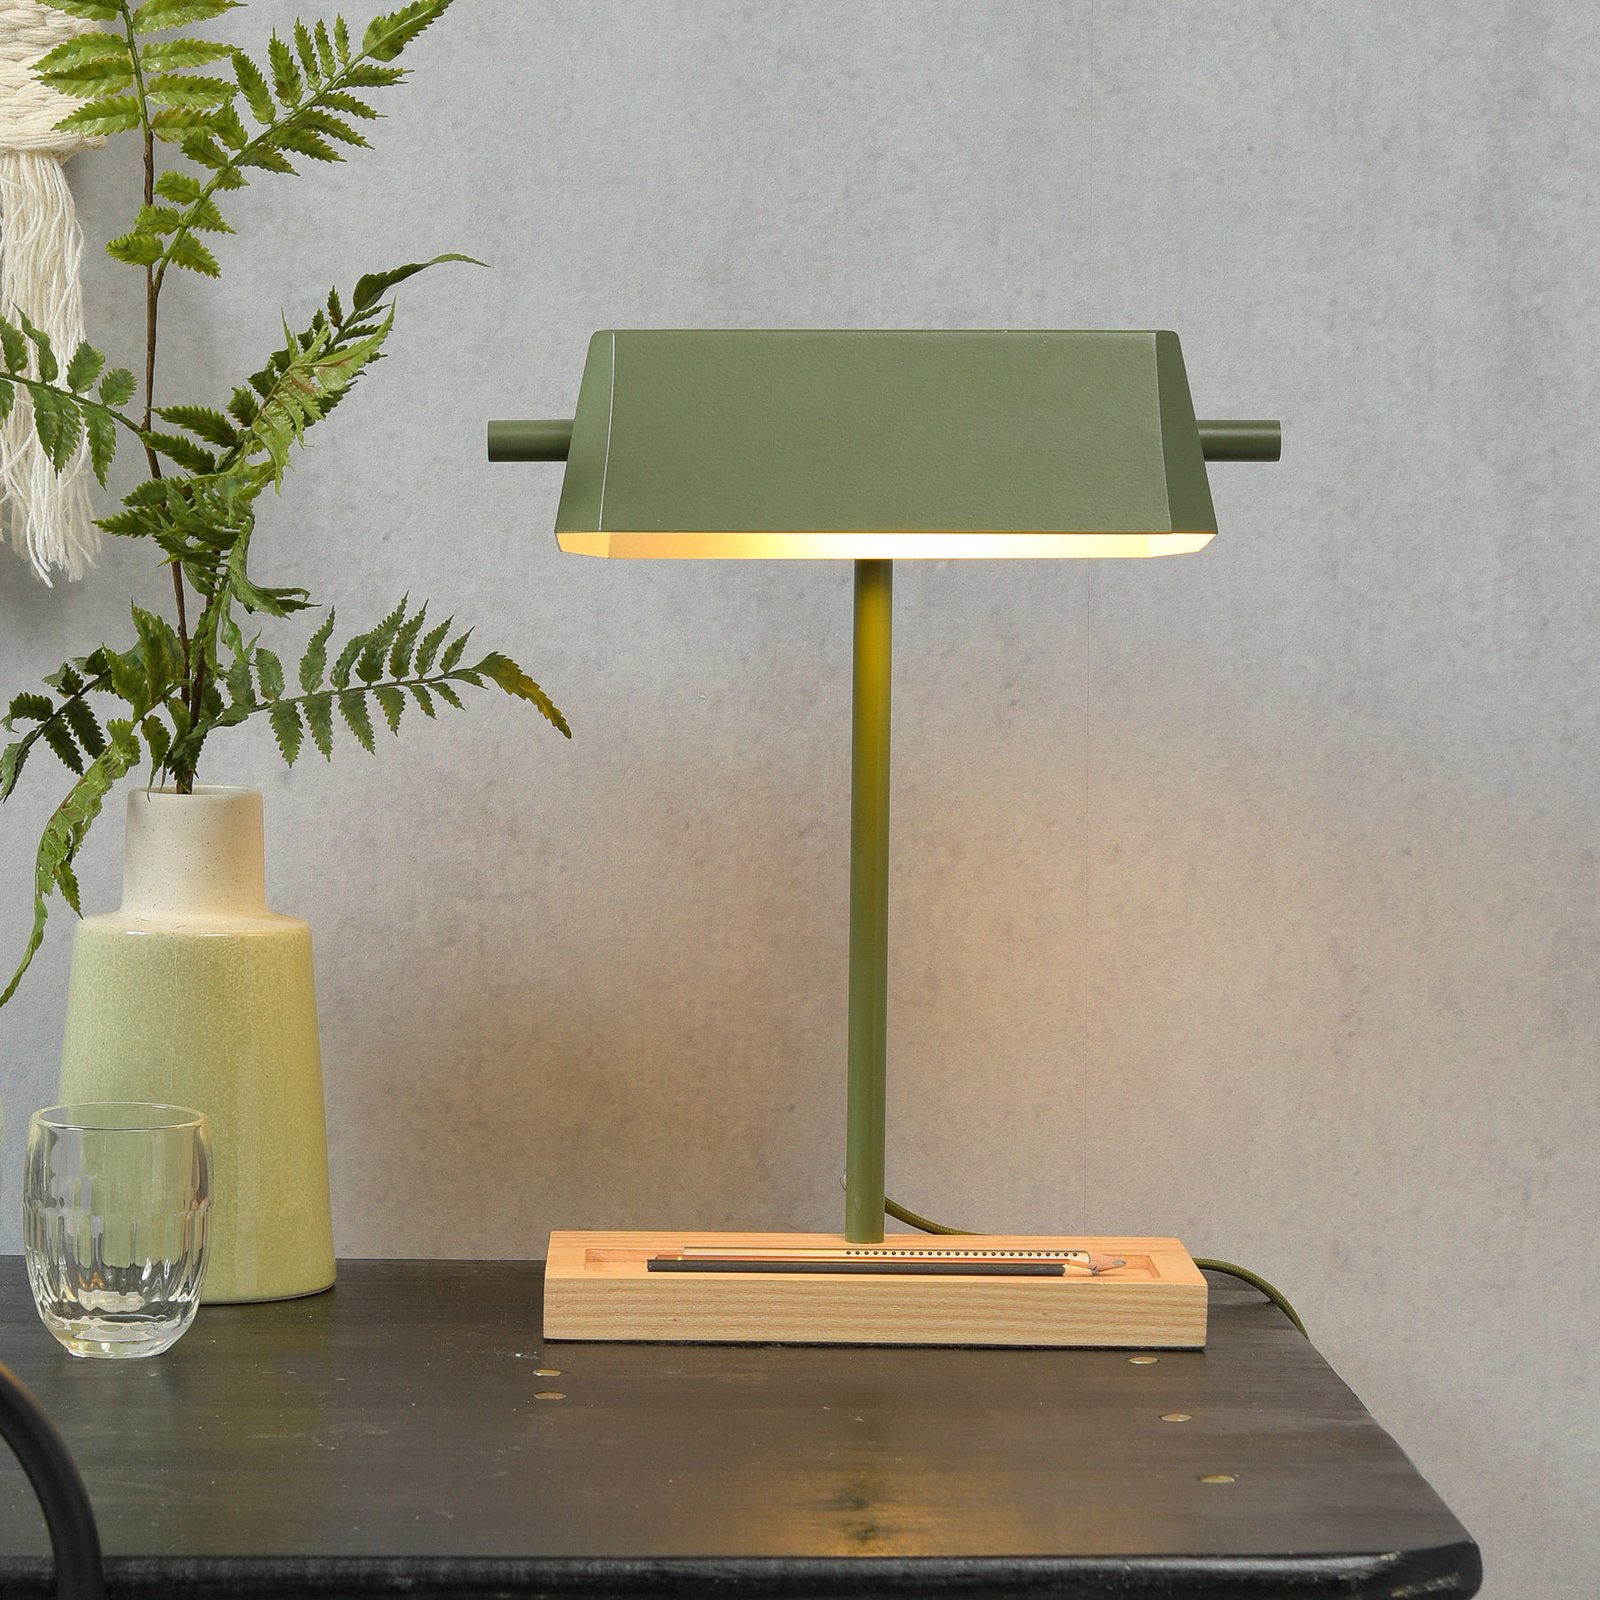 Riječ je o RoMi stolnoj lampi Cambridge, maslinasto zelene boje